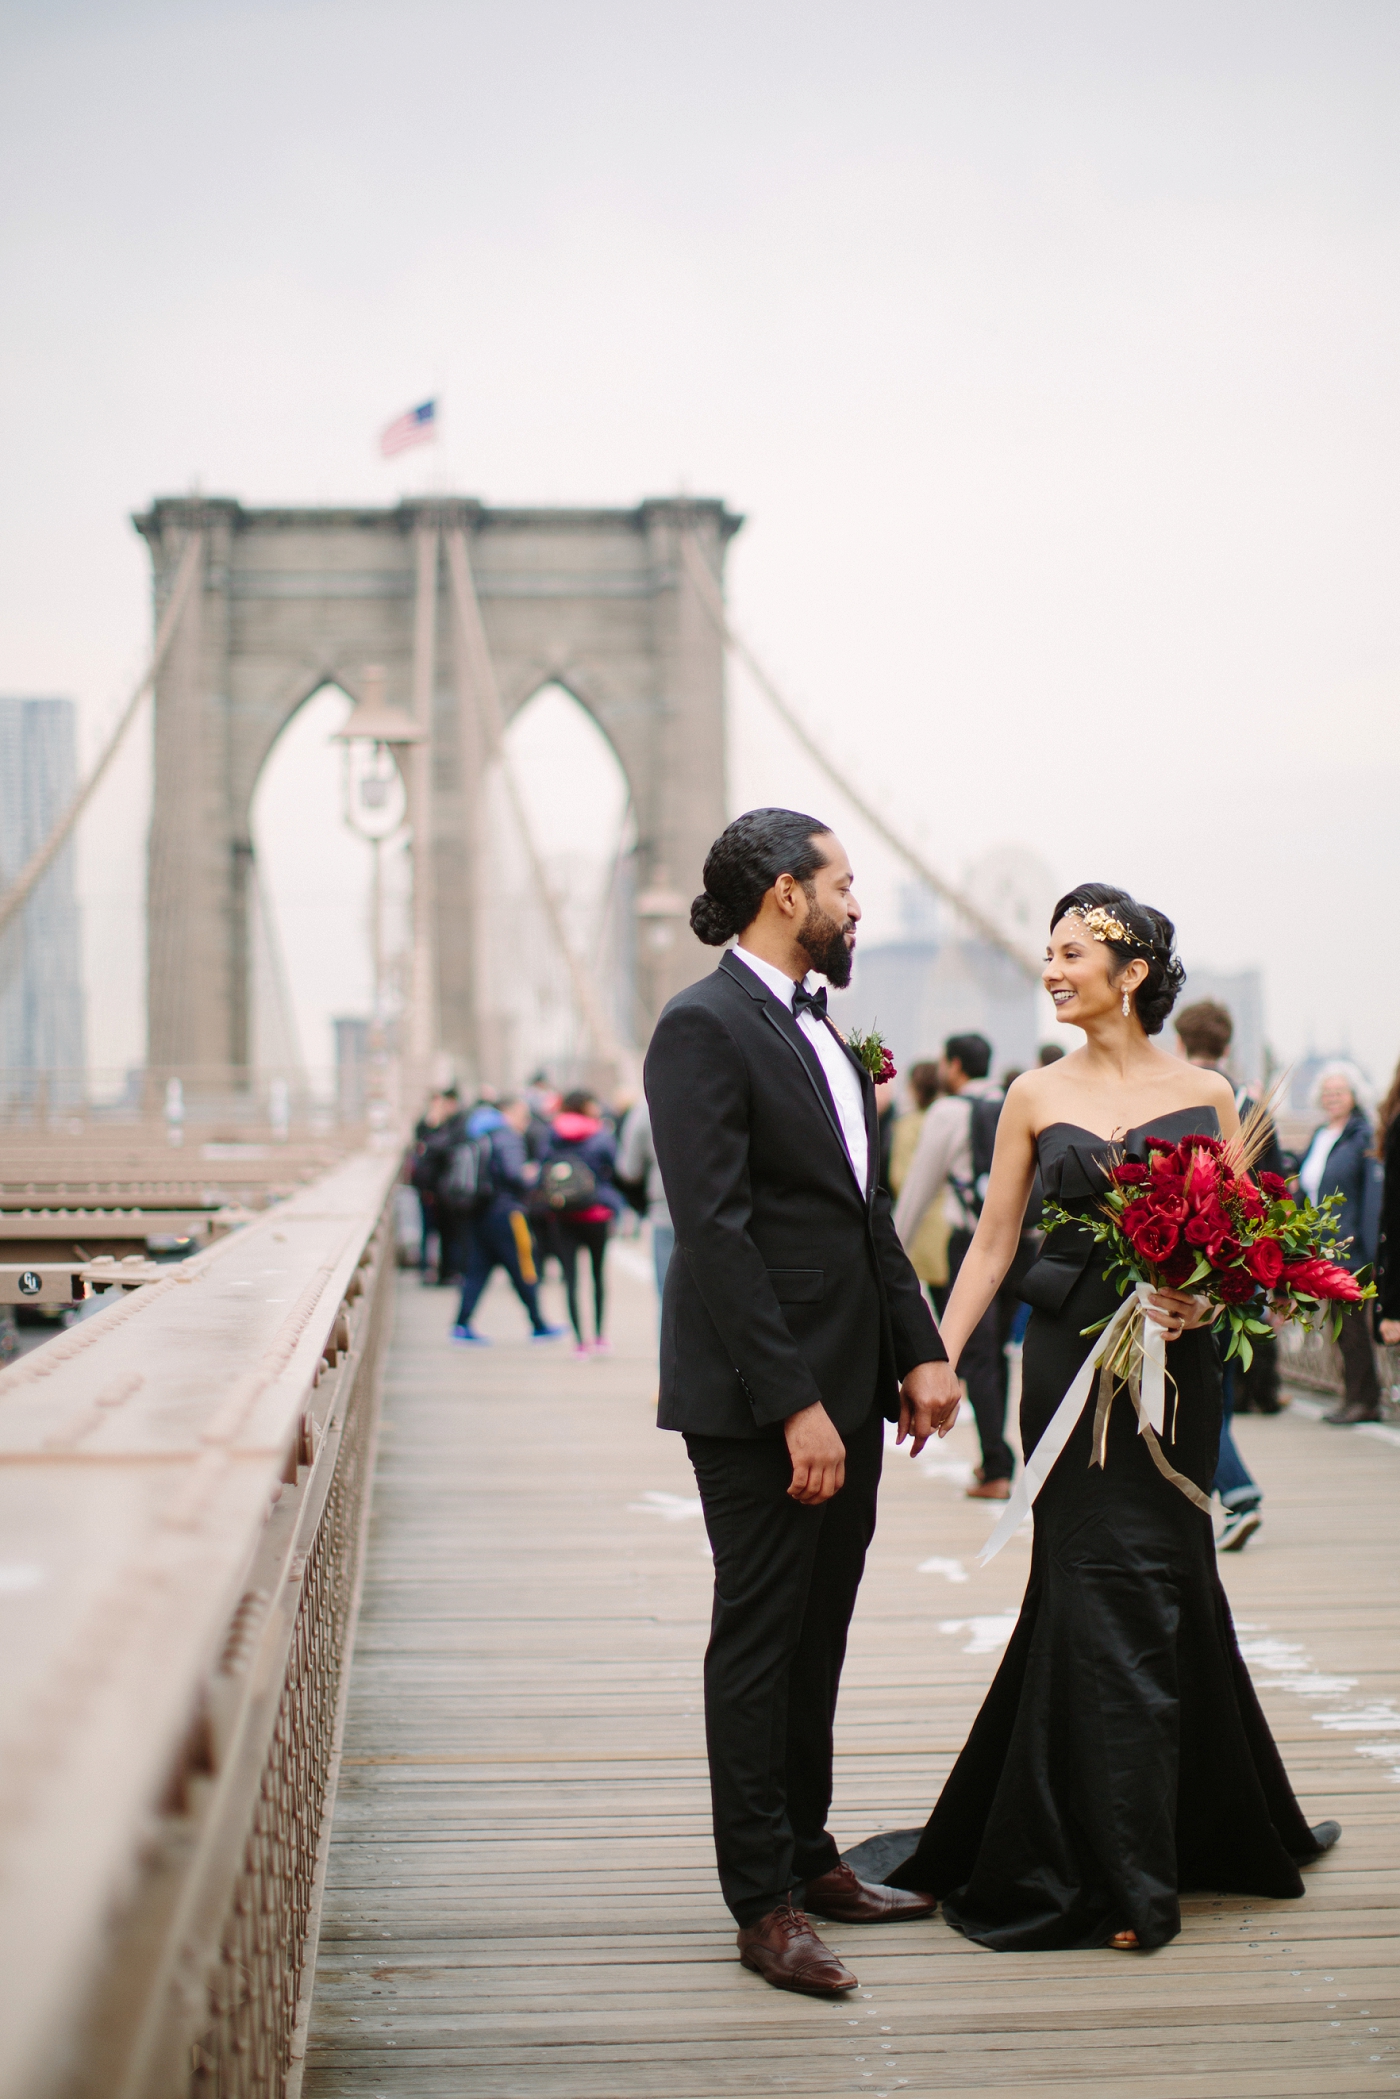 Brooklyn bridge wedding photos by Samantha Clarke Photography